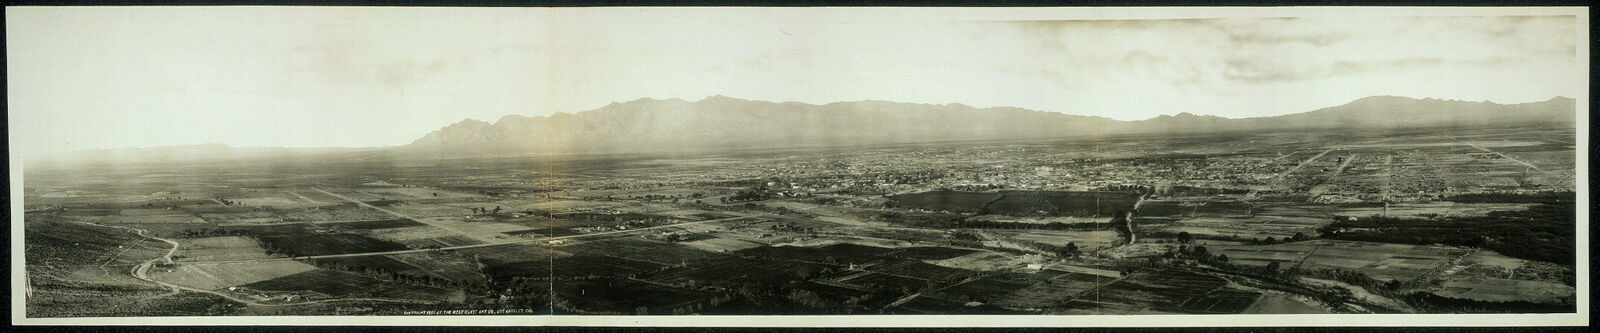 Photo:1909 Panorama of Tucson & vicinity,Arizona